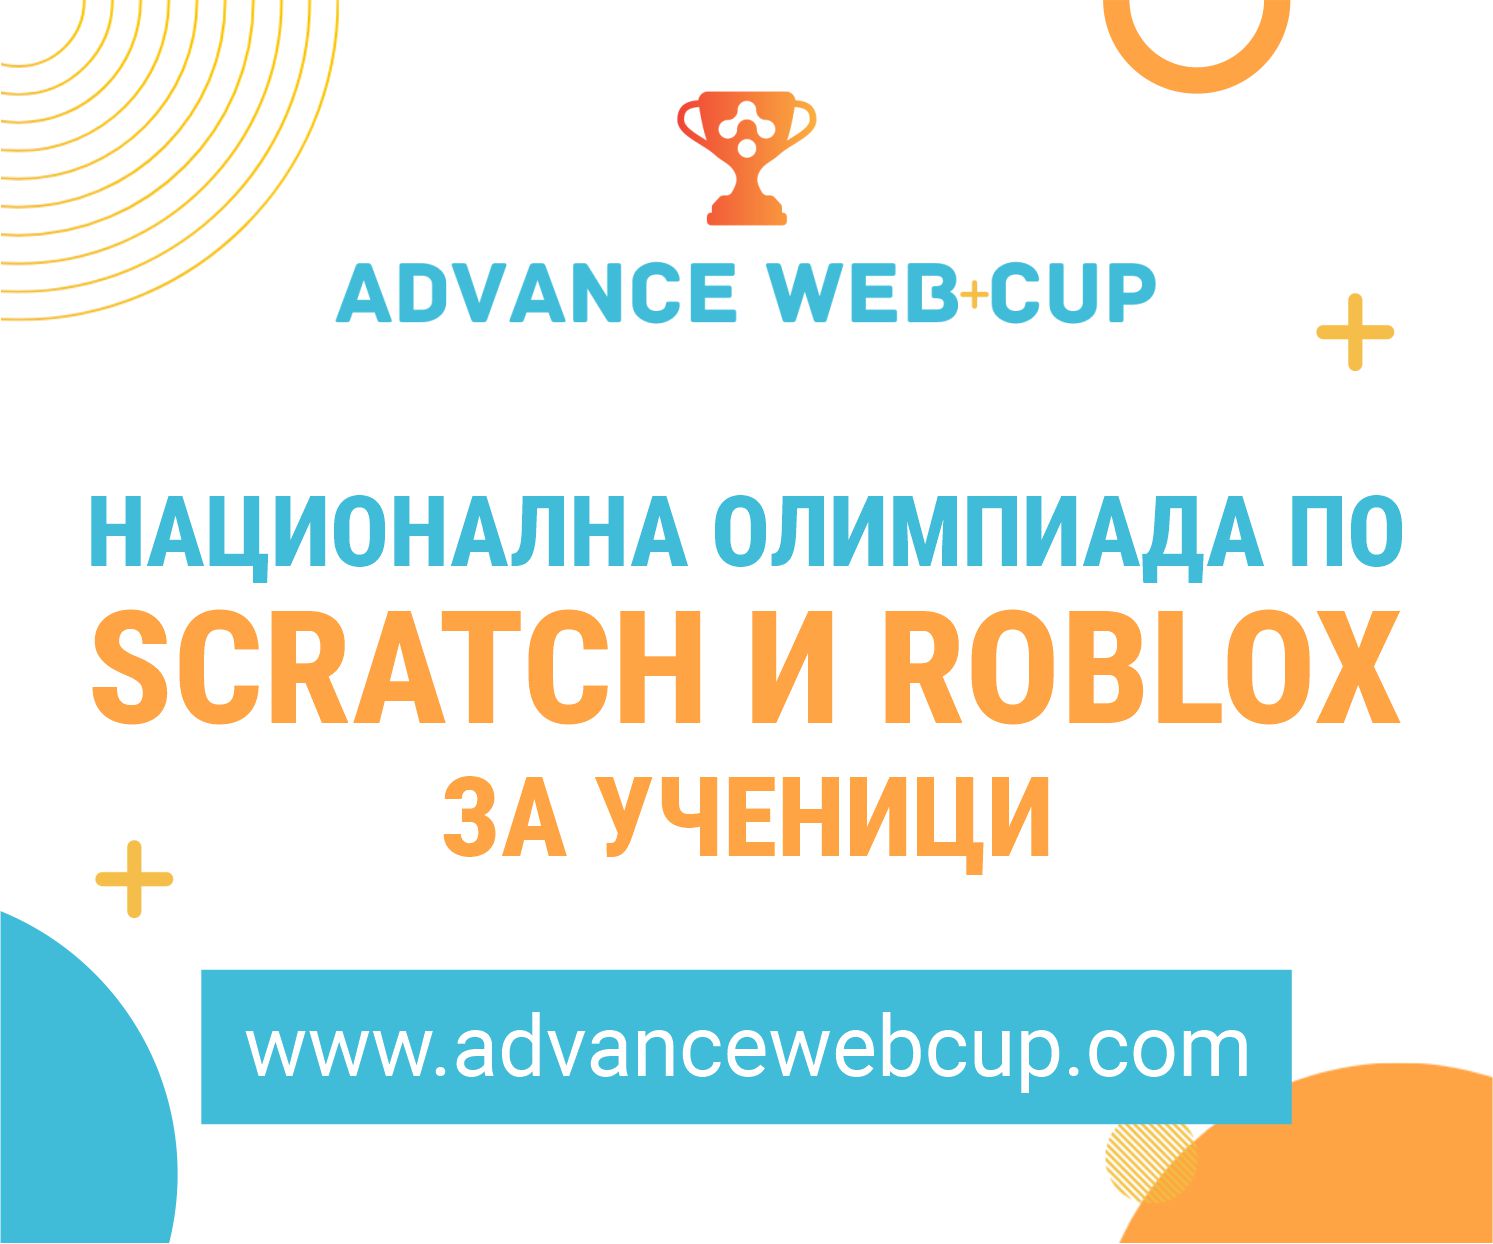 Стартира Национална олимпиада по програмиране на Scratch и Roblox - ”Advance Web Cup”